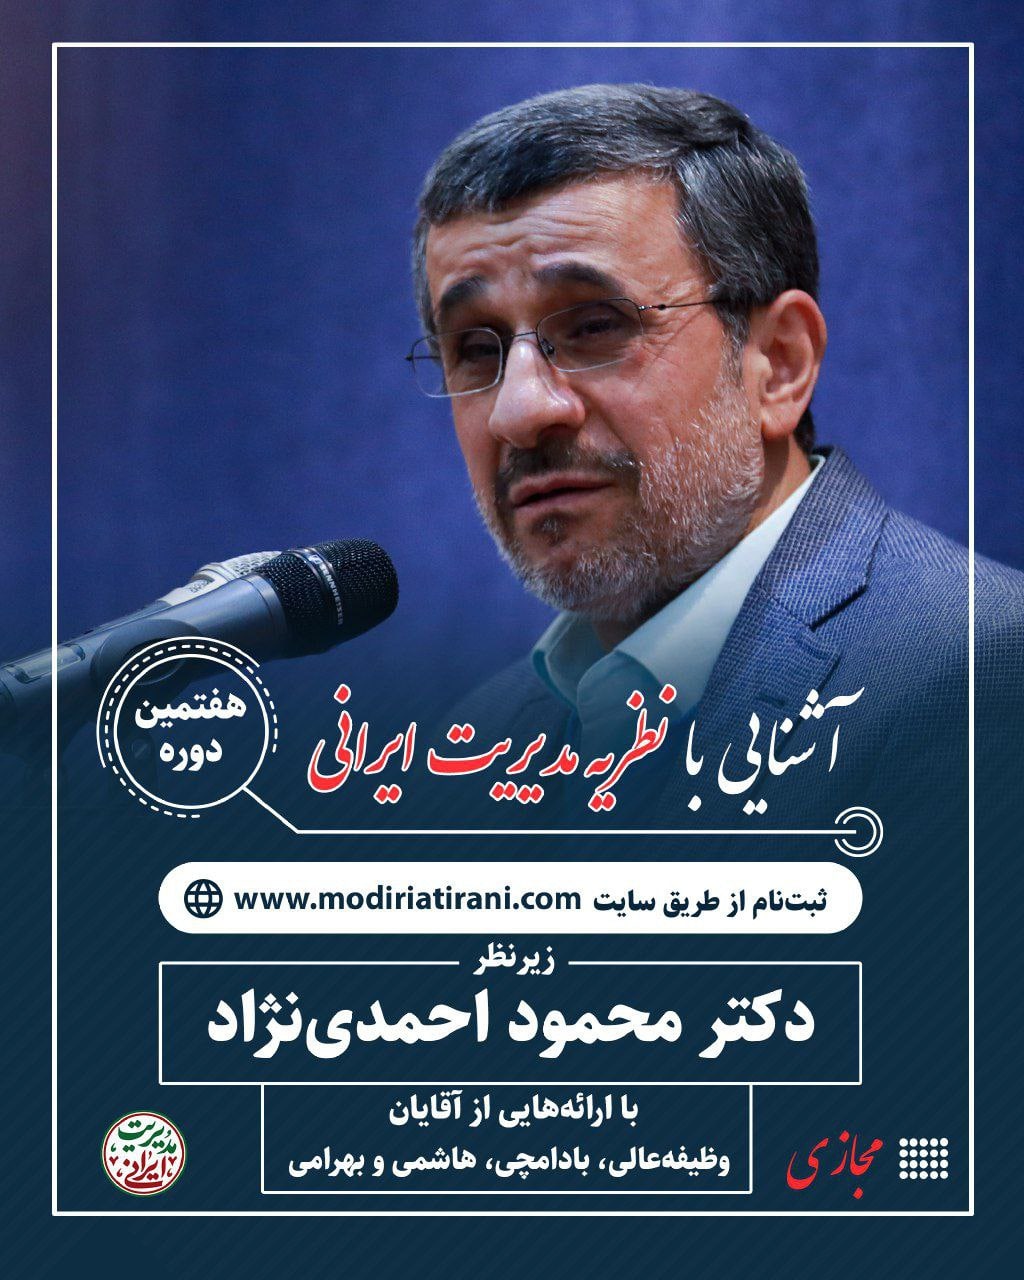 احمدی نژاد آمد، احمدی نژاد با کارگاه نظریه مدیریت ایرانی آمد